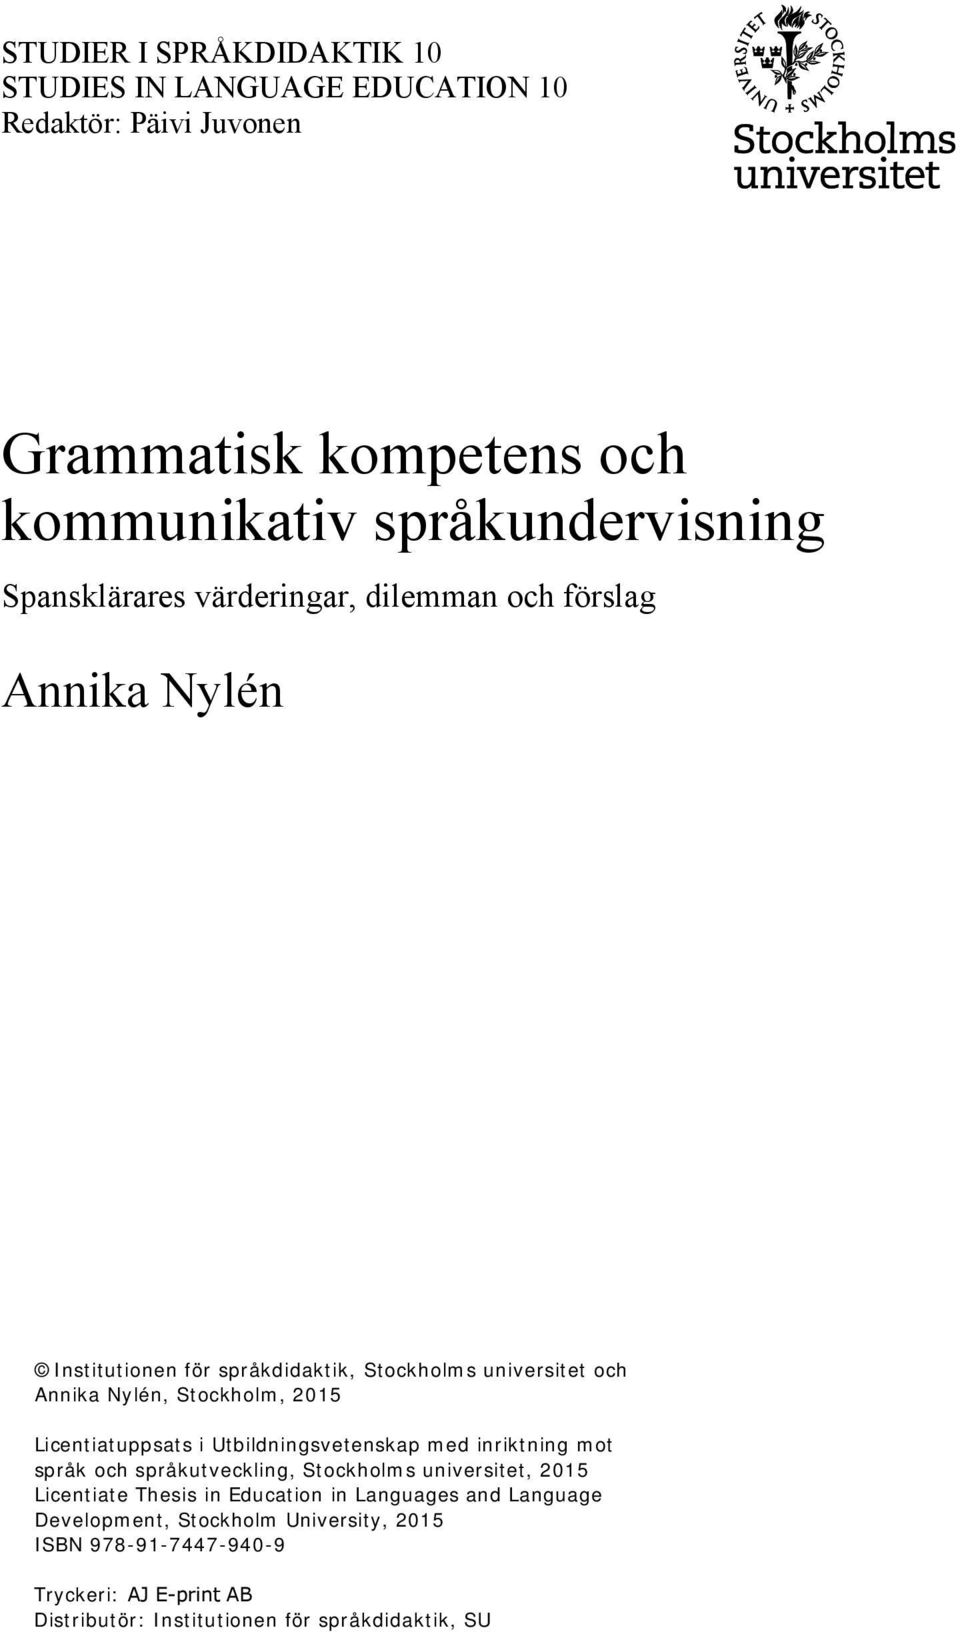 2015 Licentiatuppsats i Utbildningsvetenskap med inriktning mot språk och språkutveckling, Stockholms universitet, 2015 Licentiate Thesis in